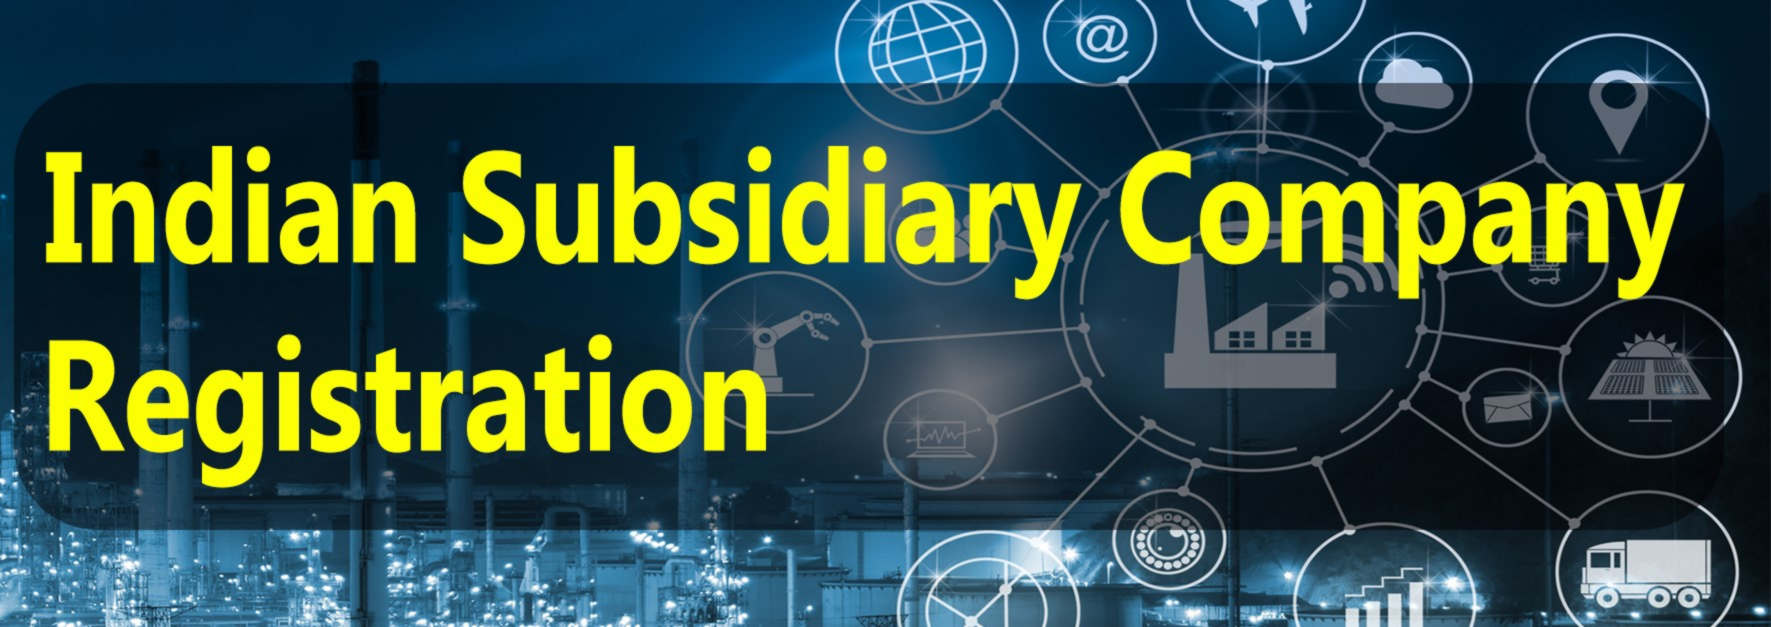 Indian Subsidiary Company Registration